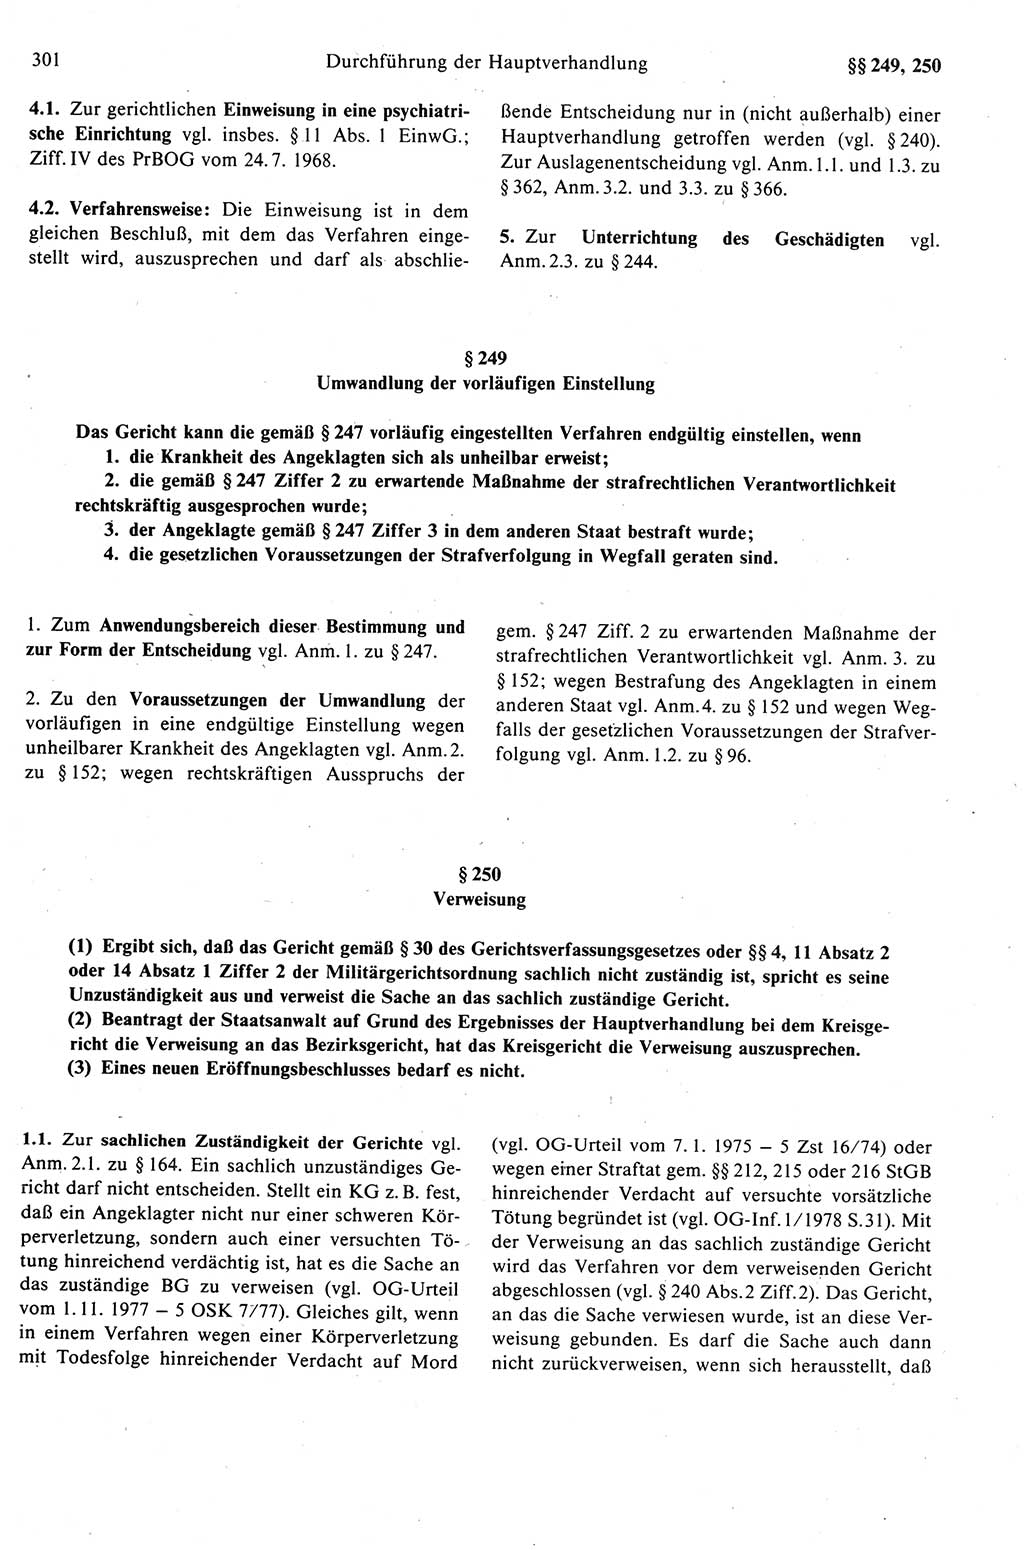 Strafprozeßrecht der DDR (Deutsche Demokratische Republik), Kommentar zur Strafprozeßordnung (StPO) 1989, Seite 301 (Strafprozeßr. DDR Komm. StPO 1989, S. 301)